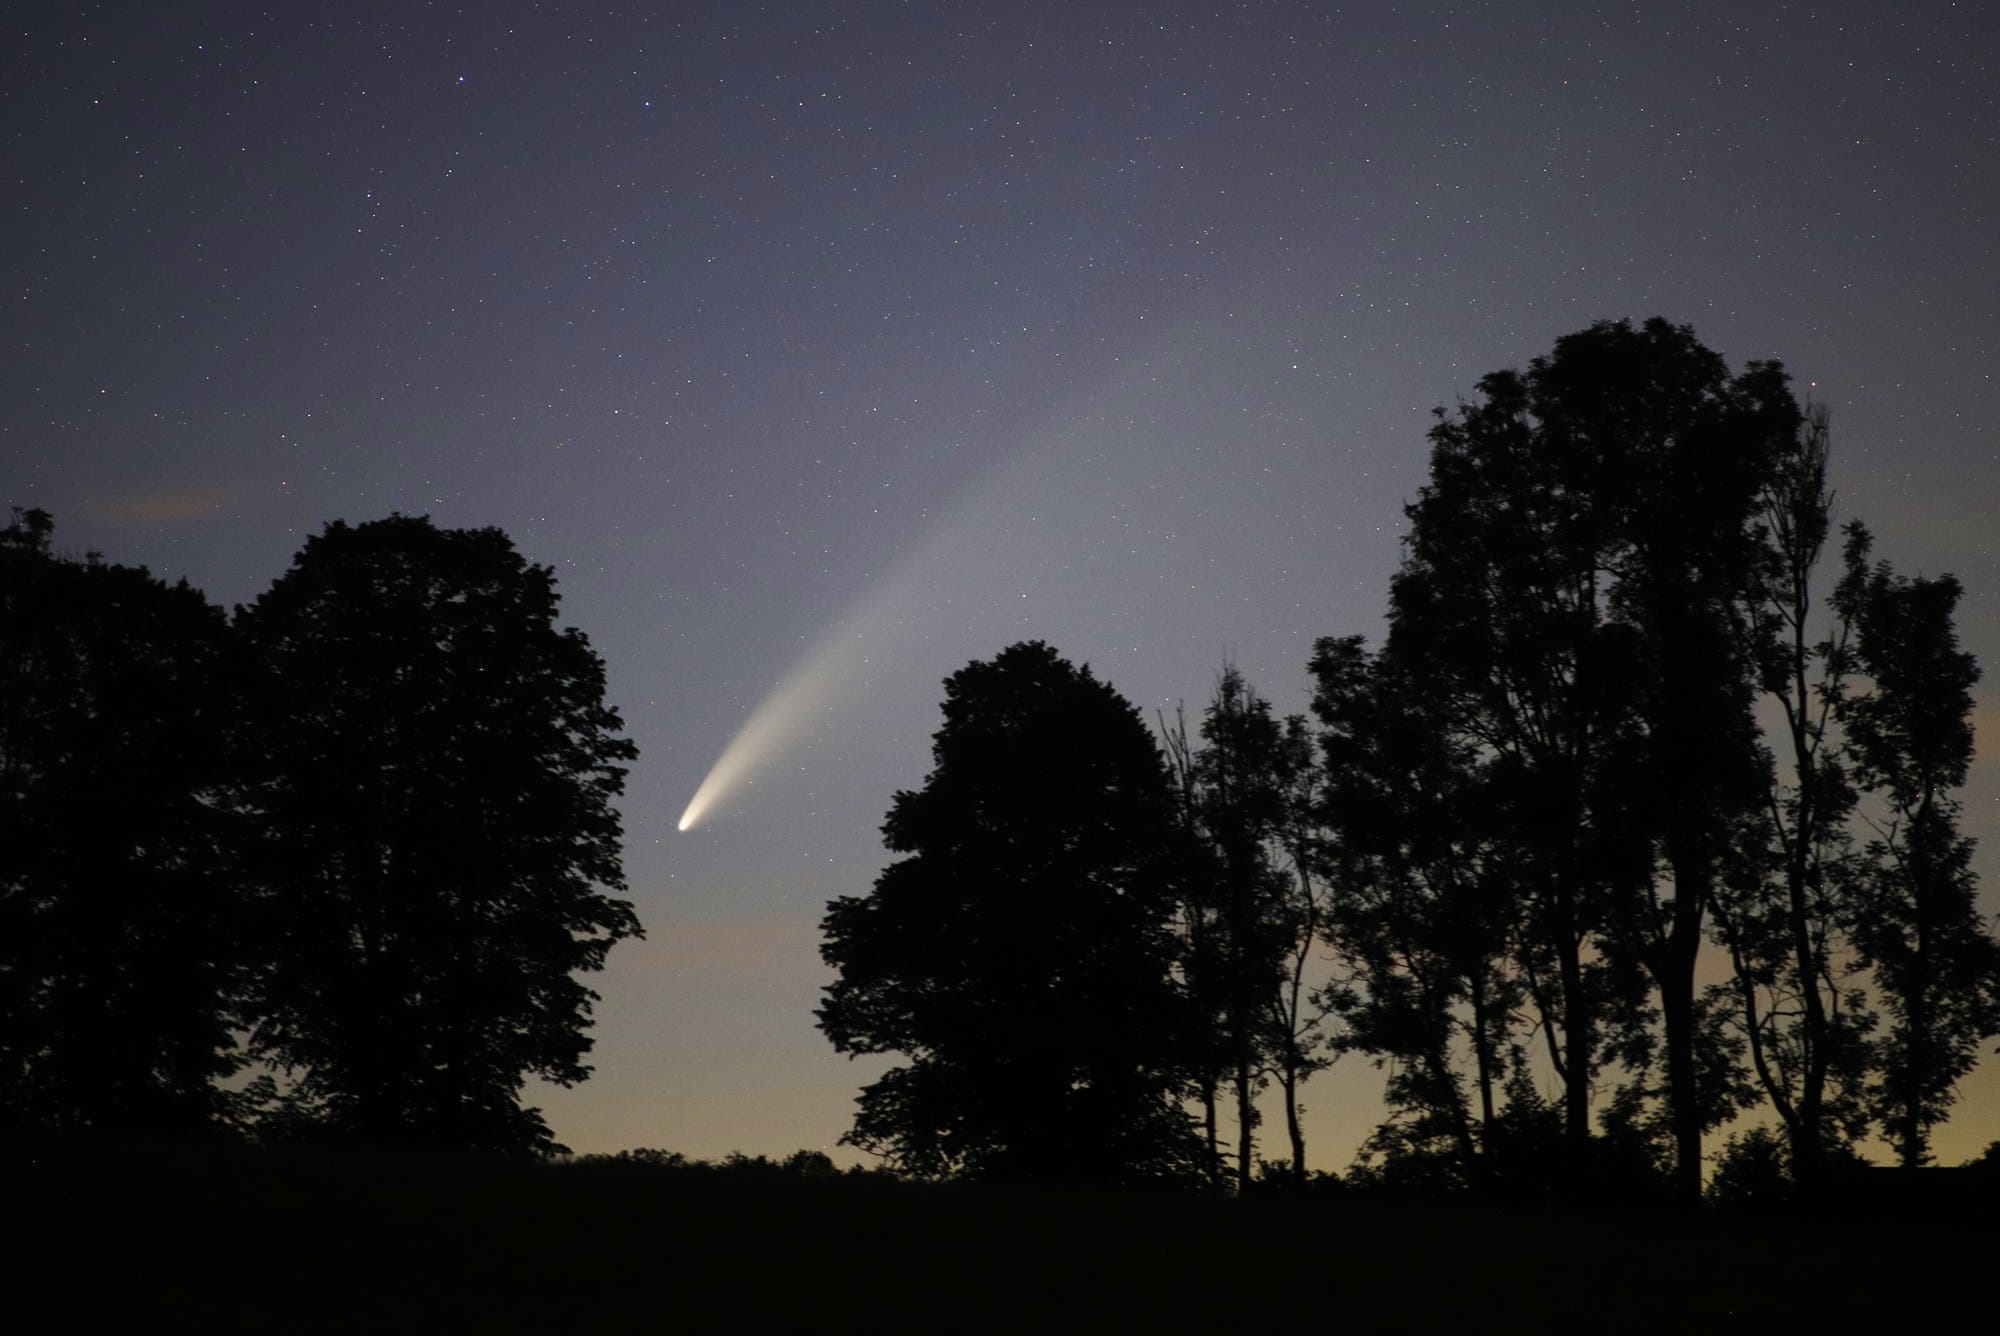 Komet C/2020 F3 NEOWISE am späten Abend des 12. Juli 2020